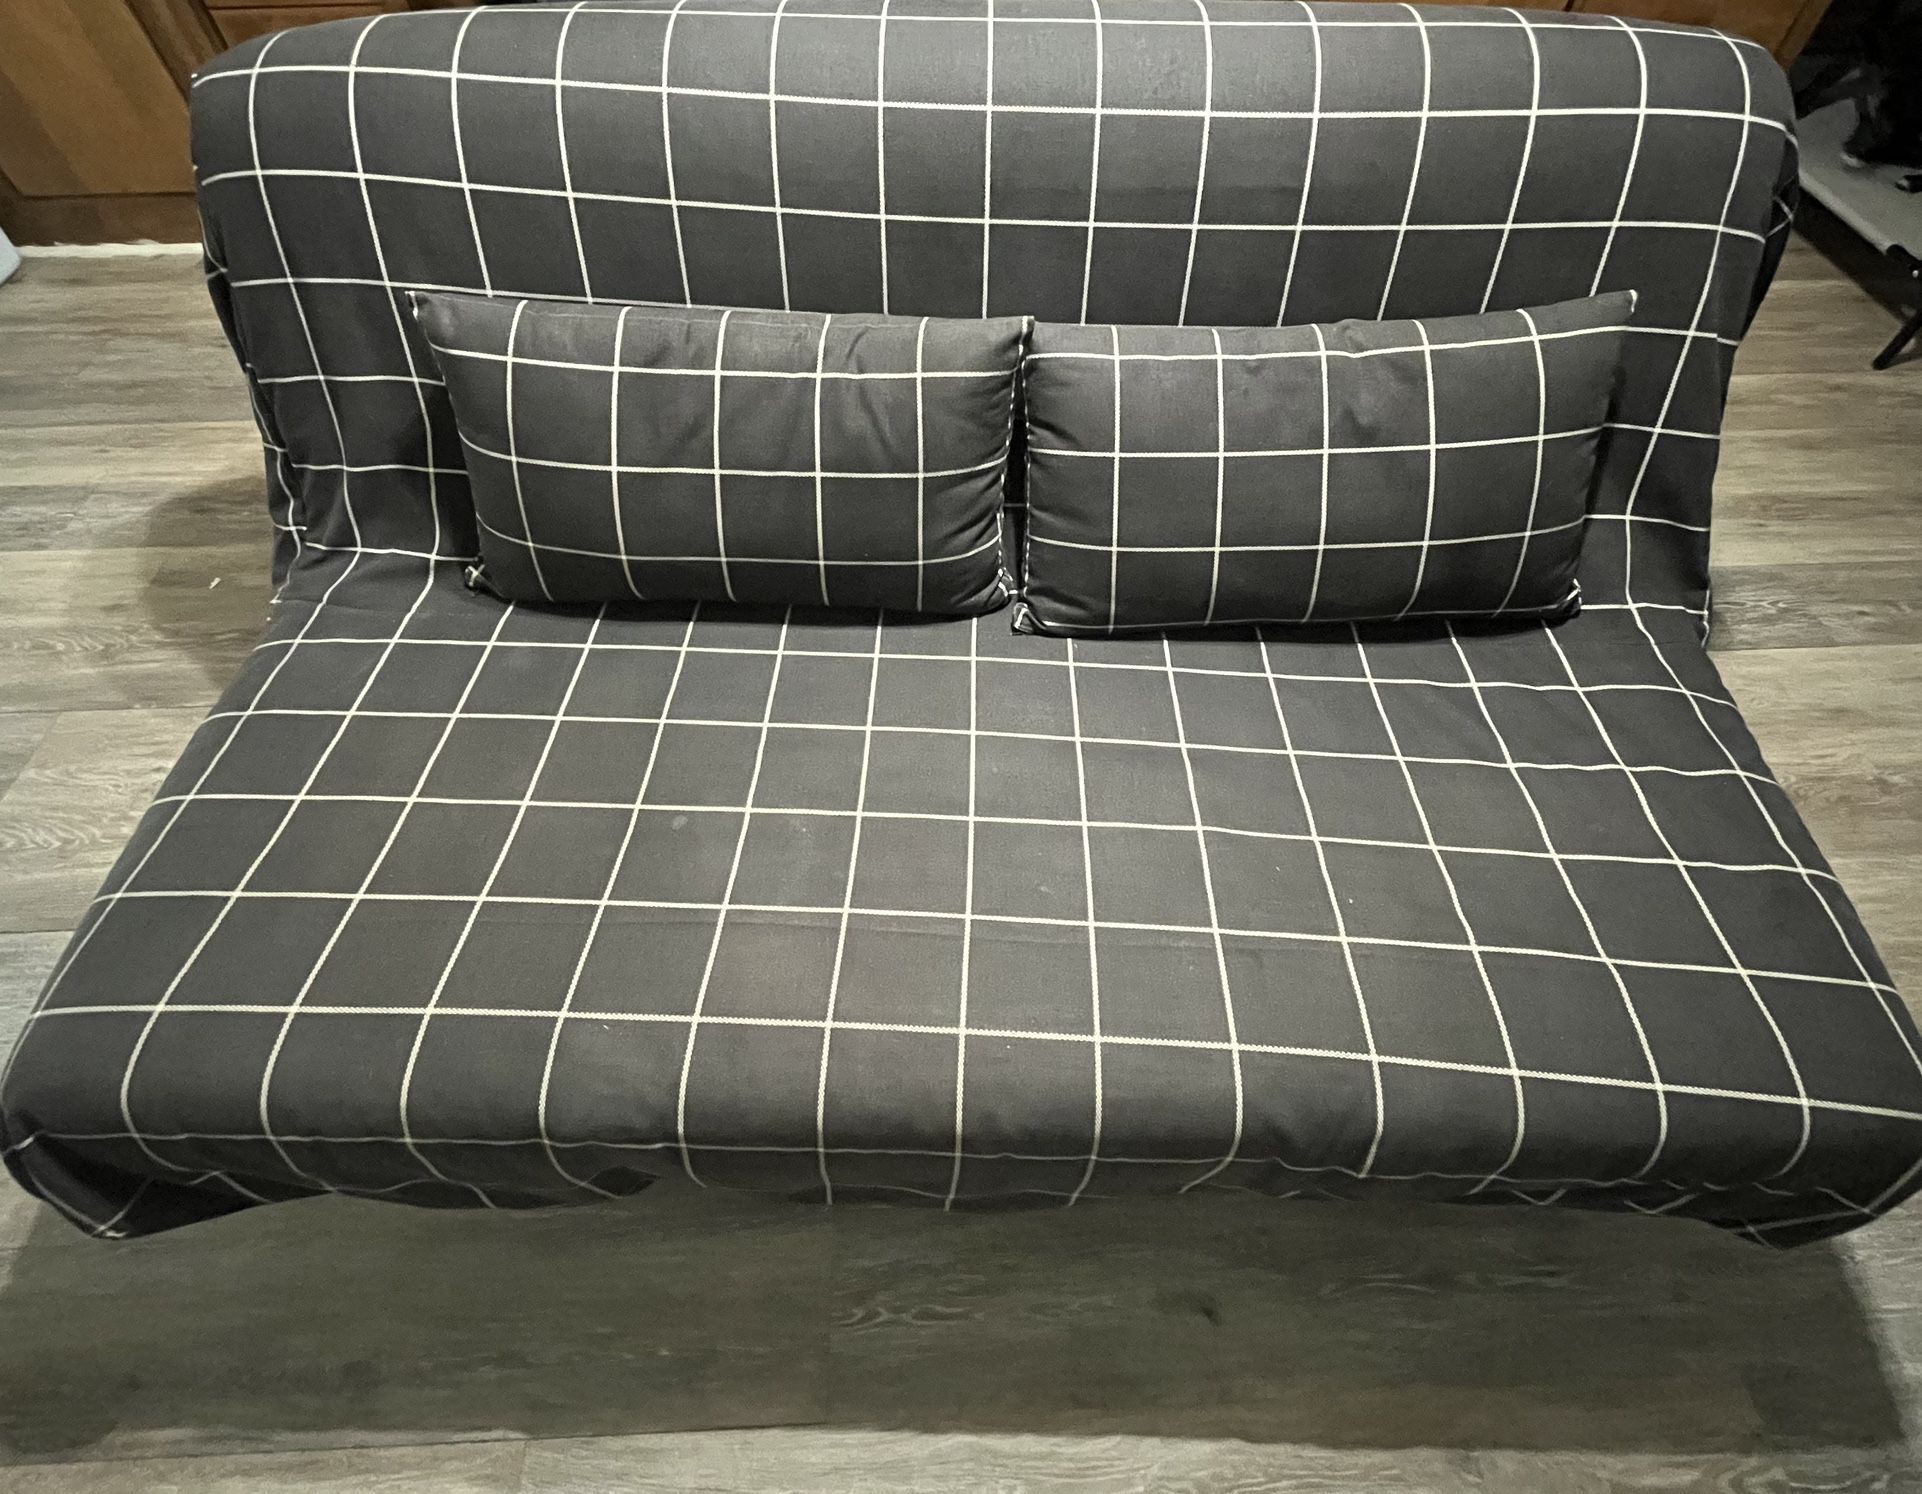 Futon/Sofa Bed